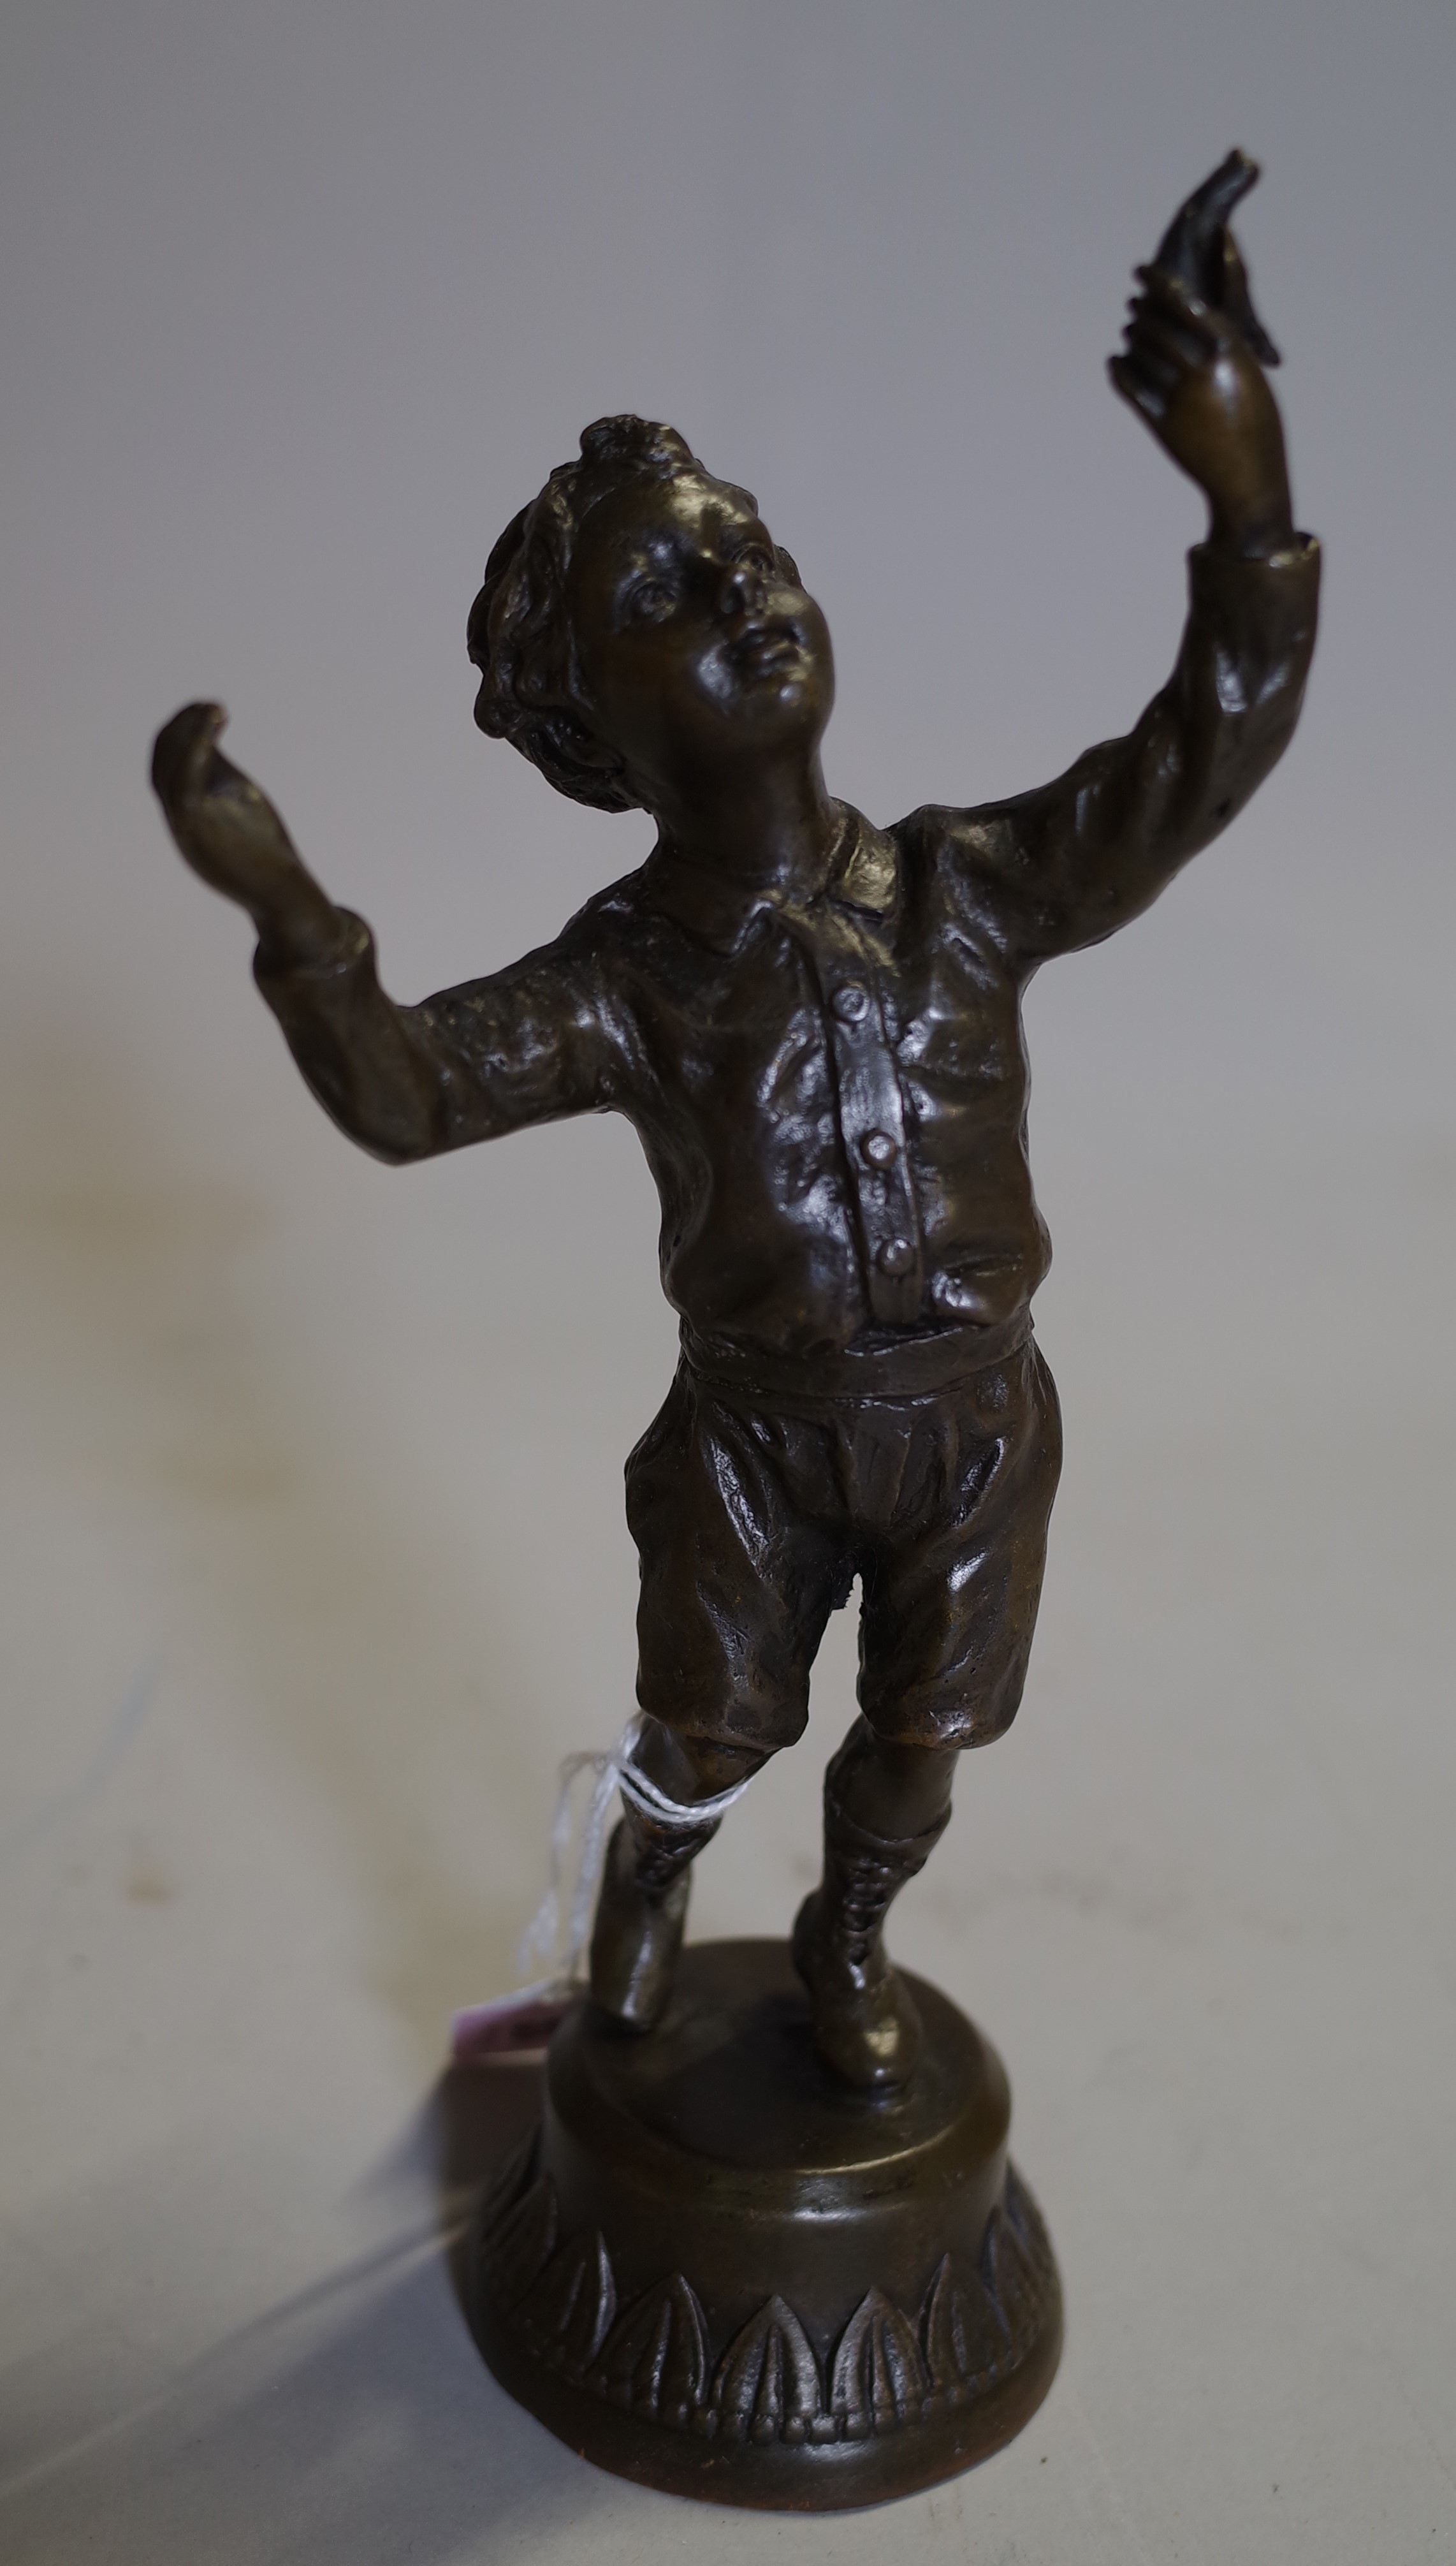 A 20th century bronze figure of a boy holding a bird, 22cm high.